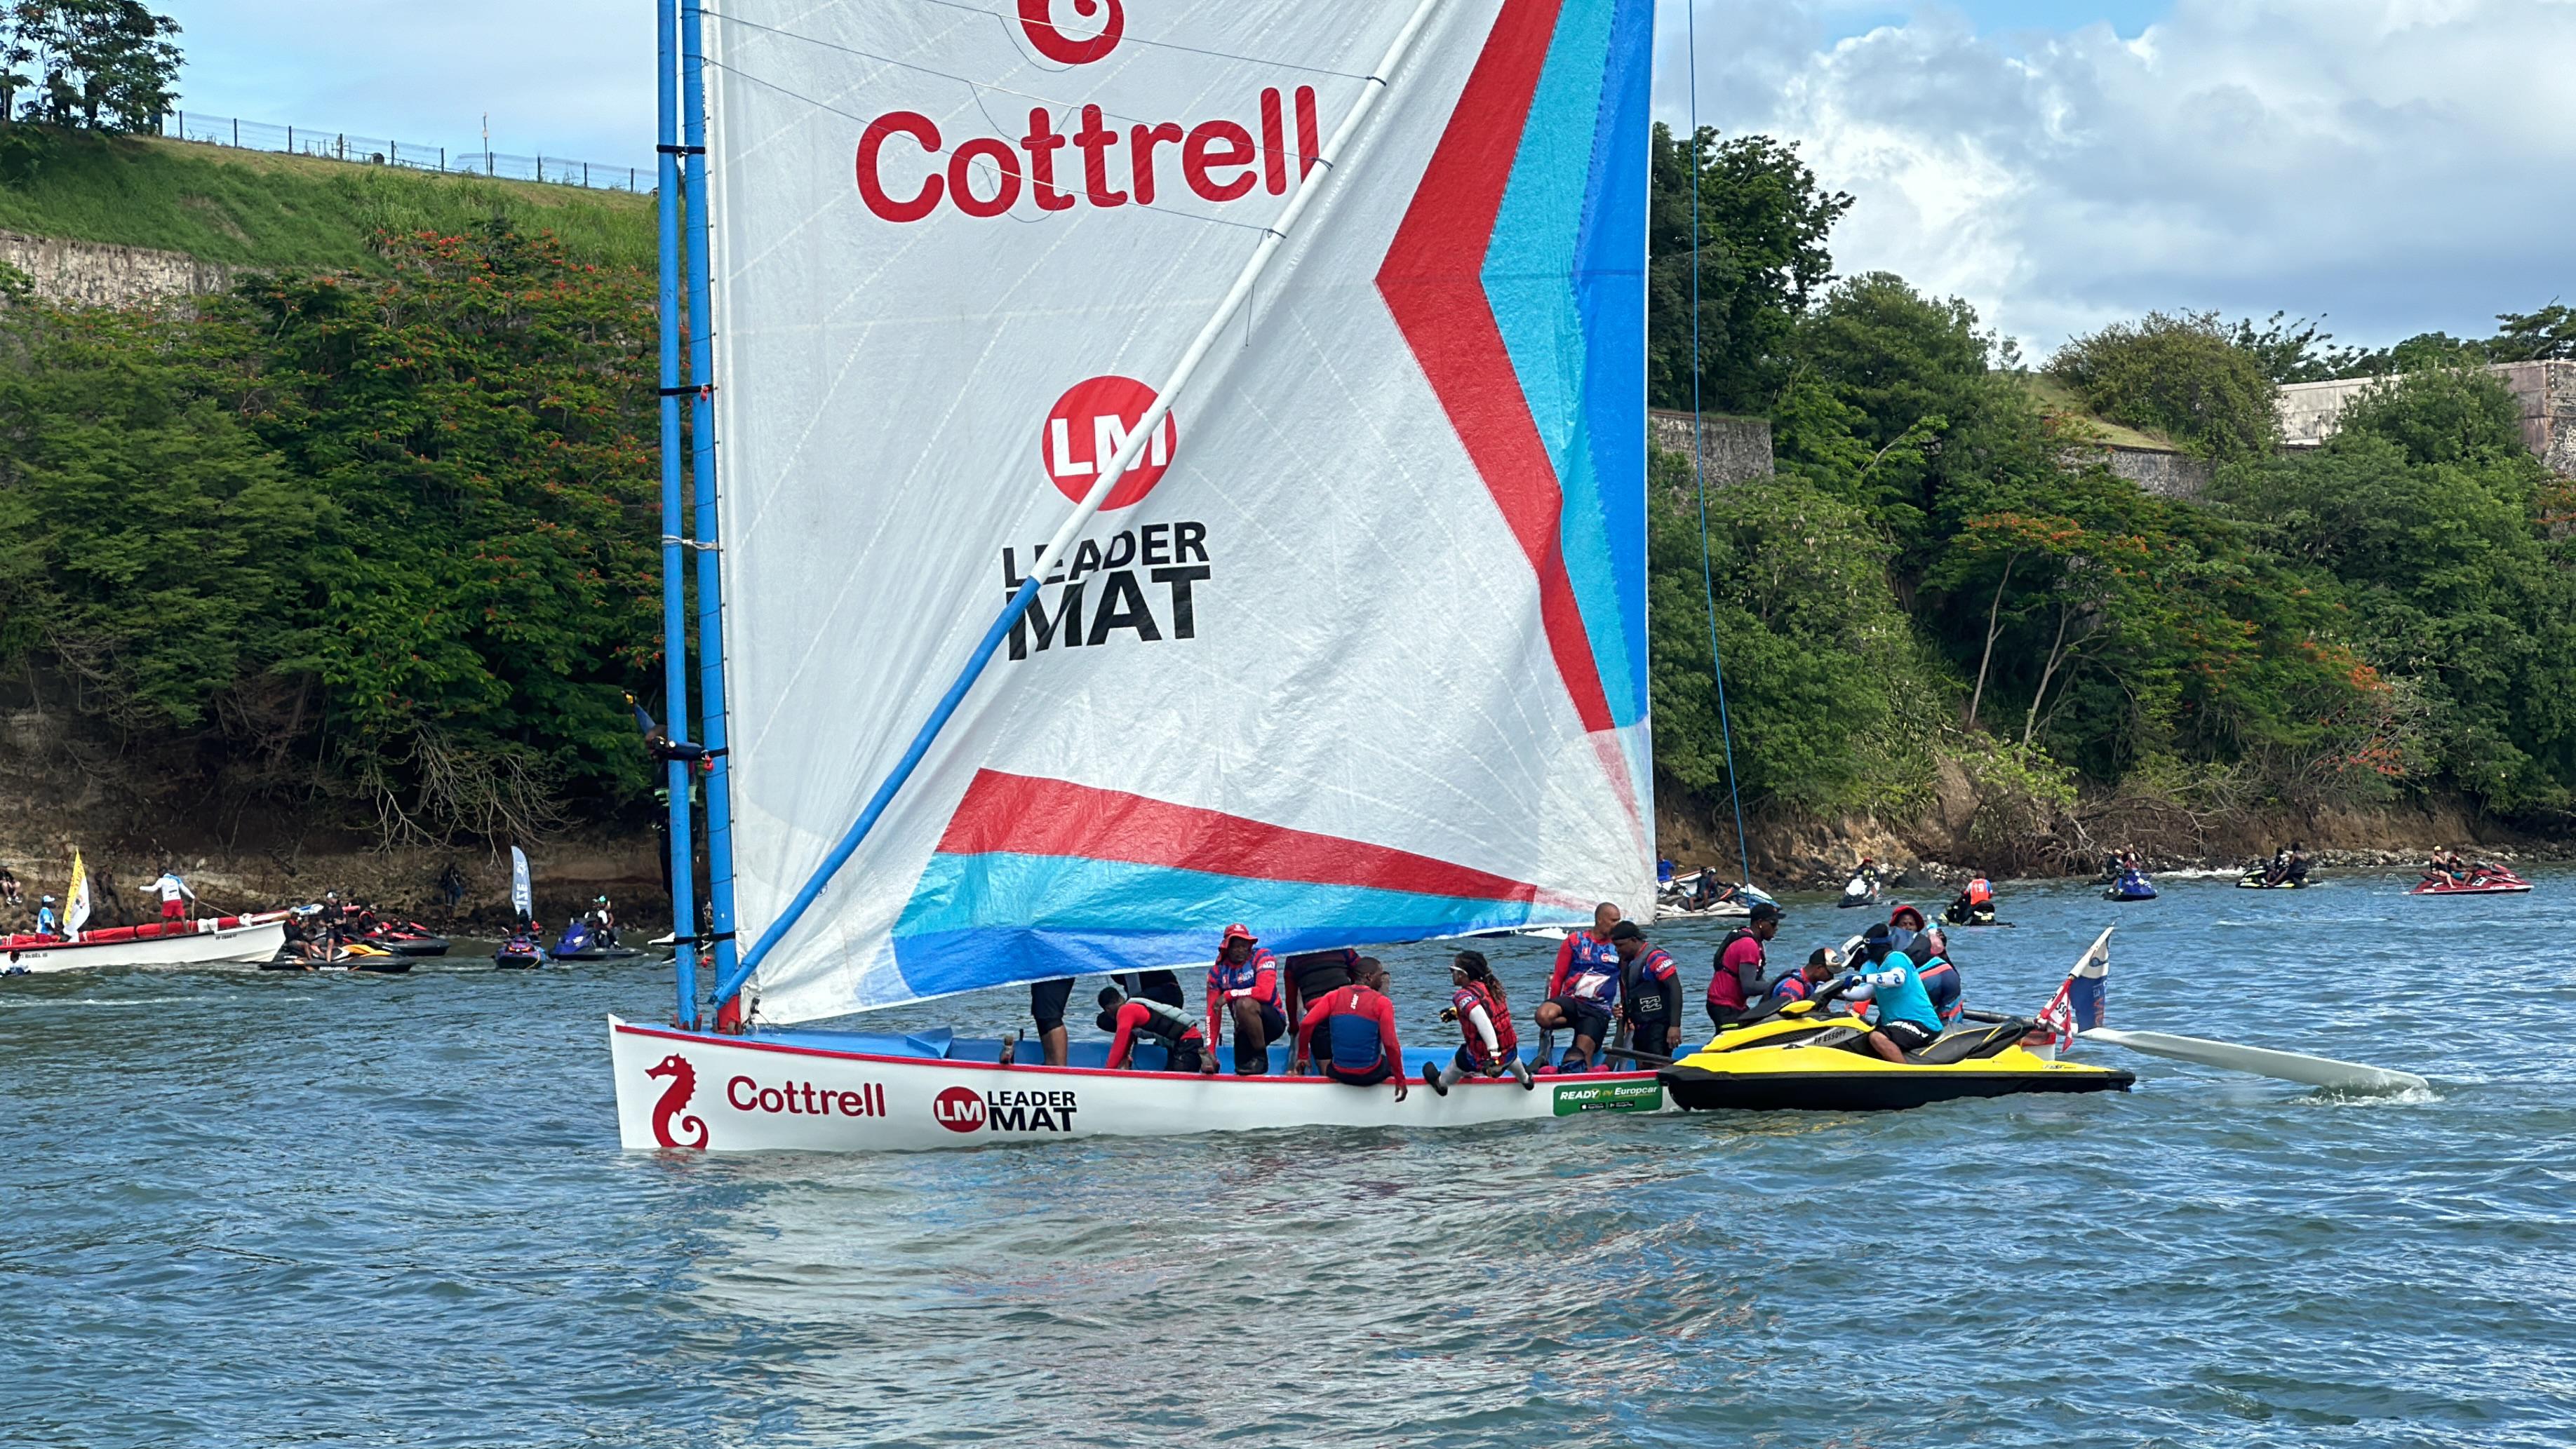     [⭕️Direct⛵️]Cottrell/Leader Mat vainqueur au finish à Fort-de-France

